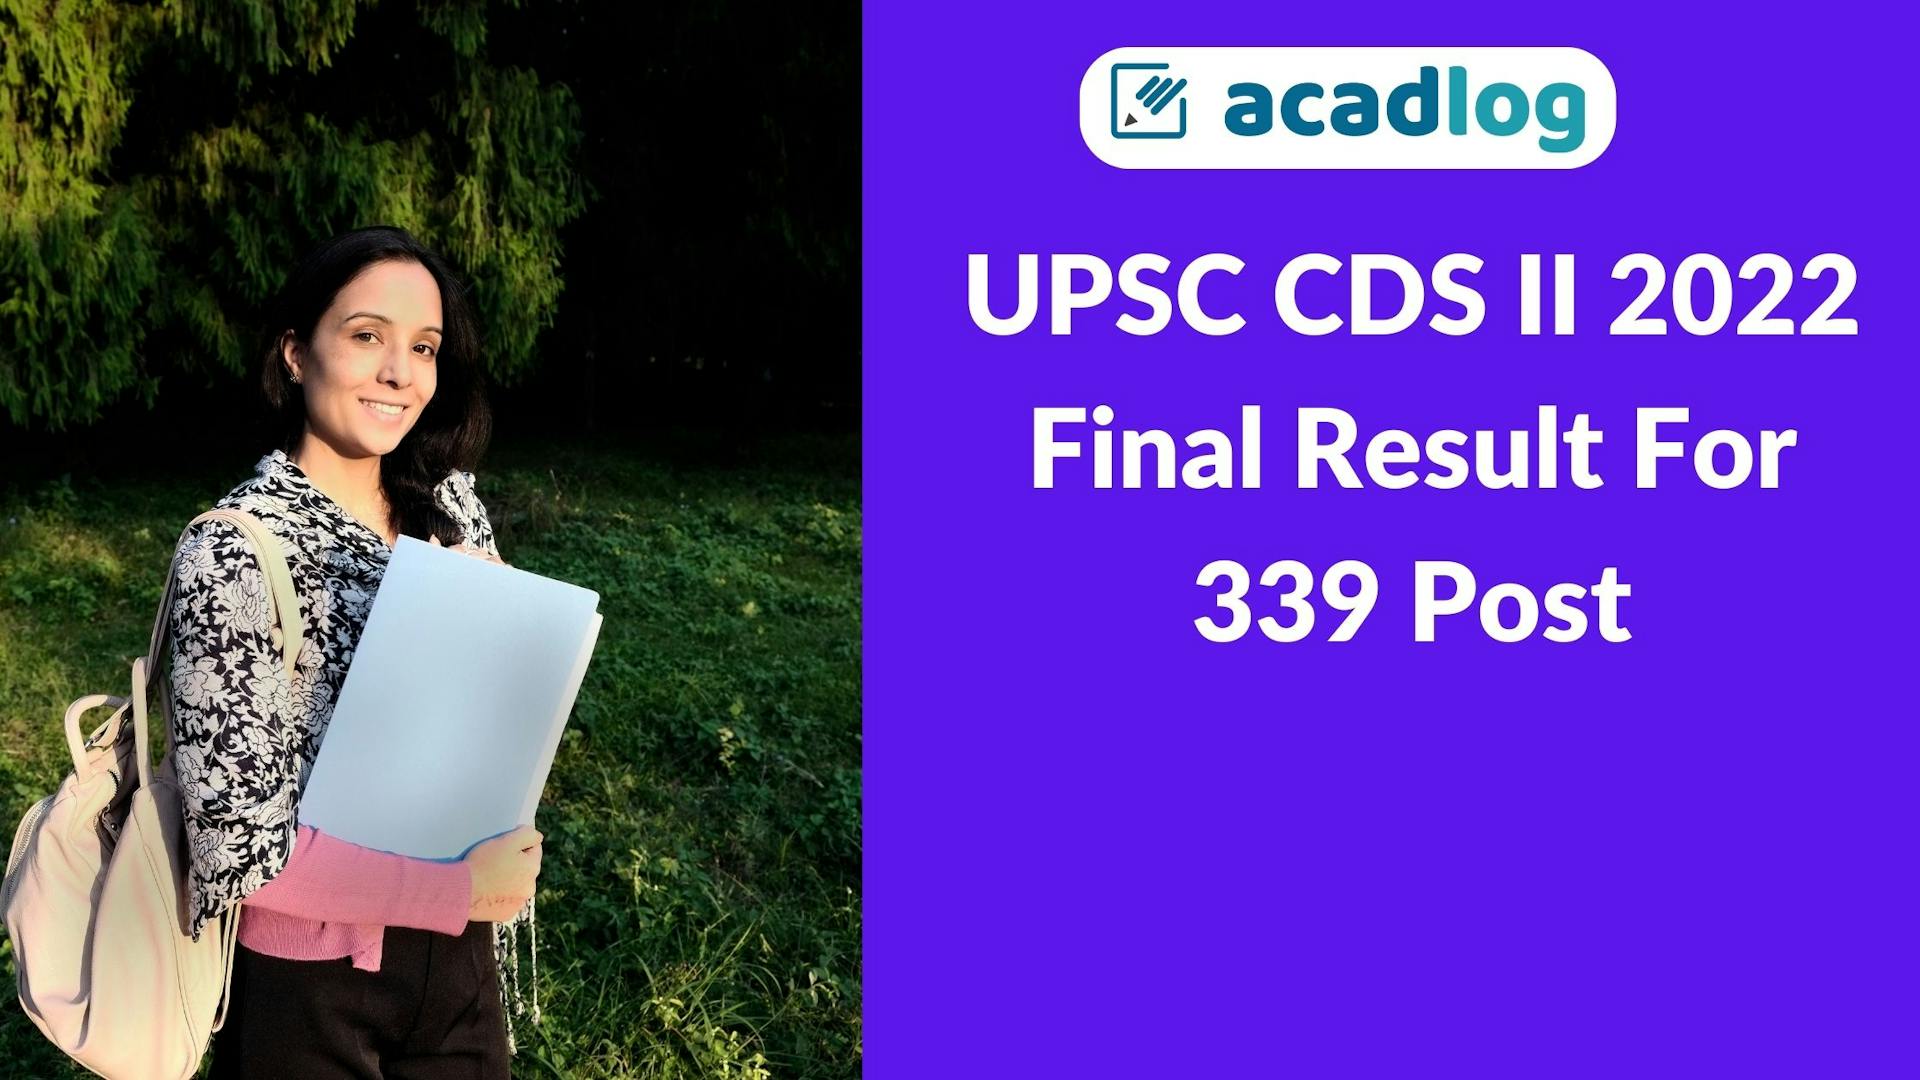 Acadlog: UPSC CDS II Exam Final Result 2022